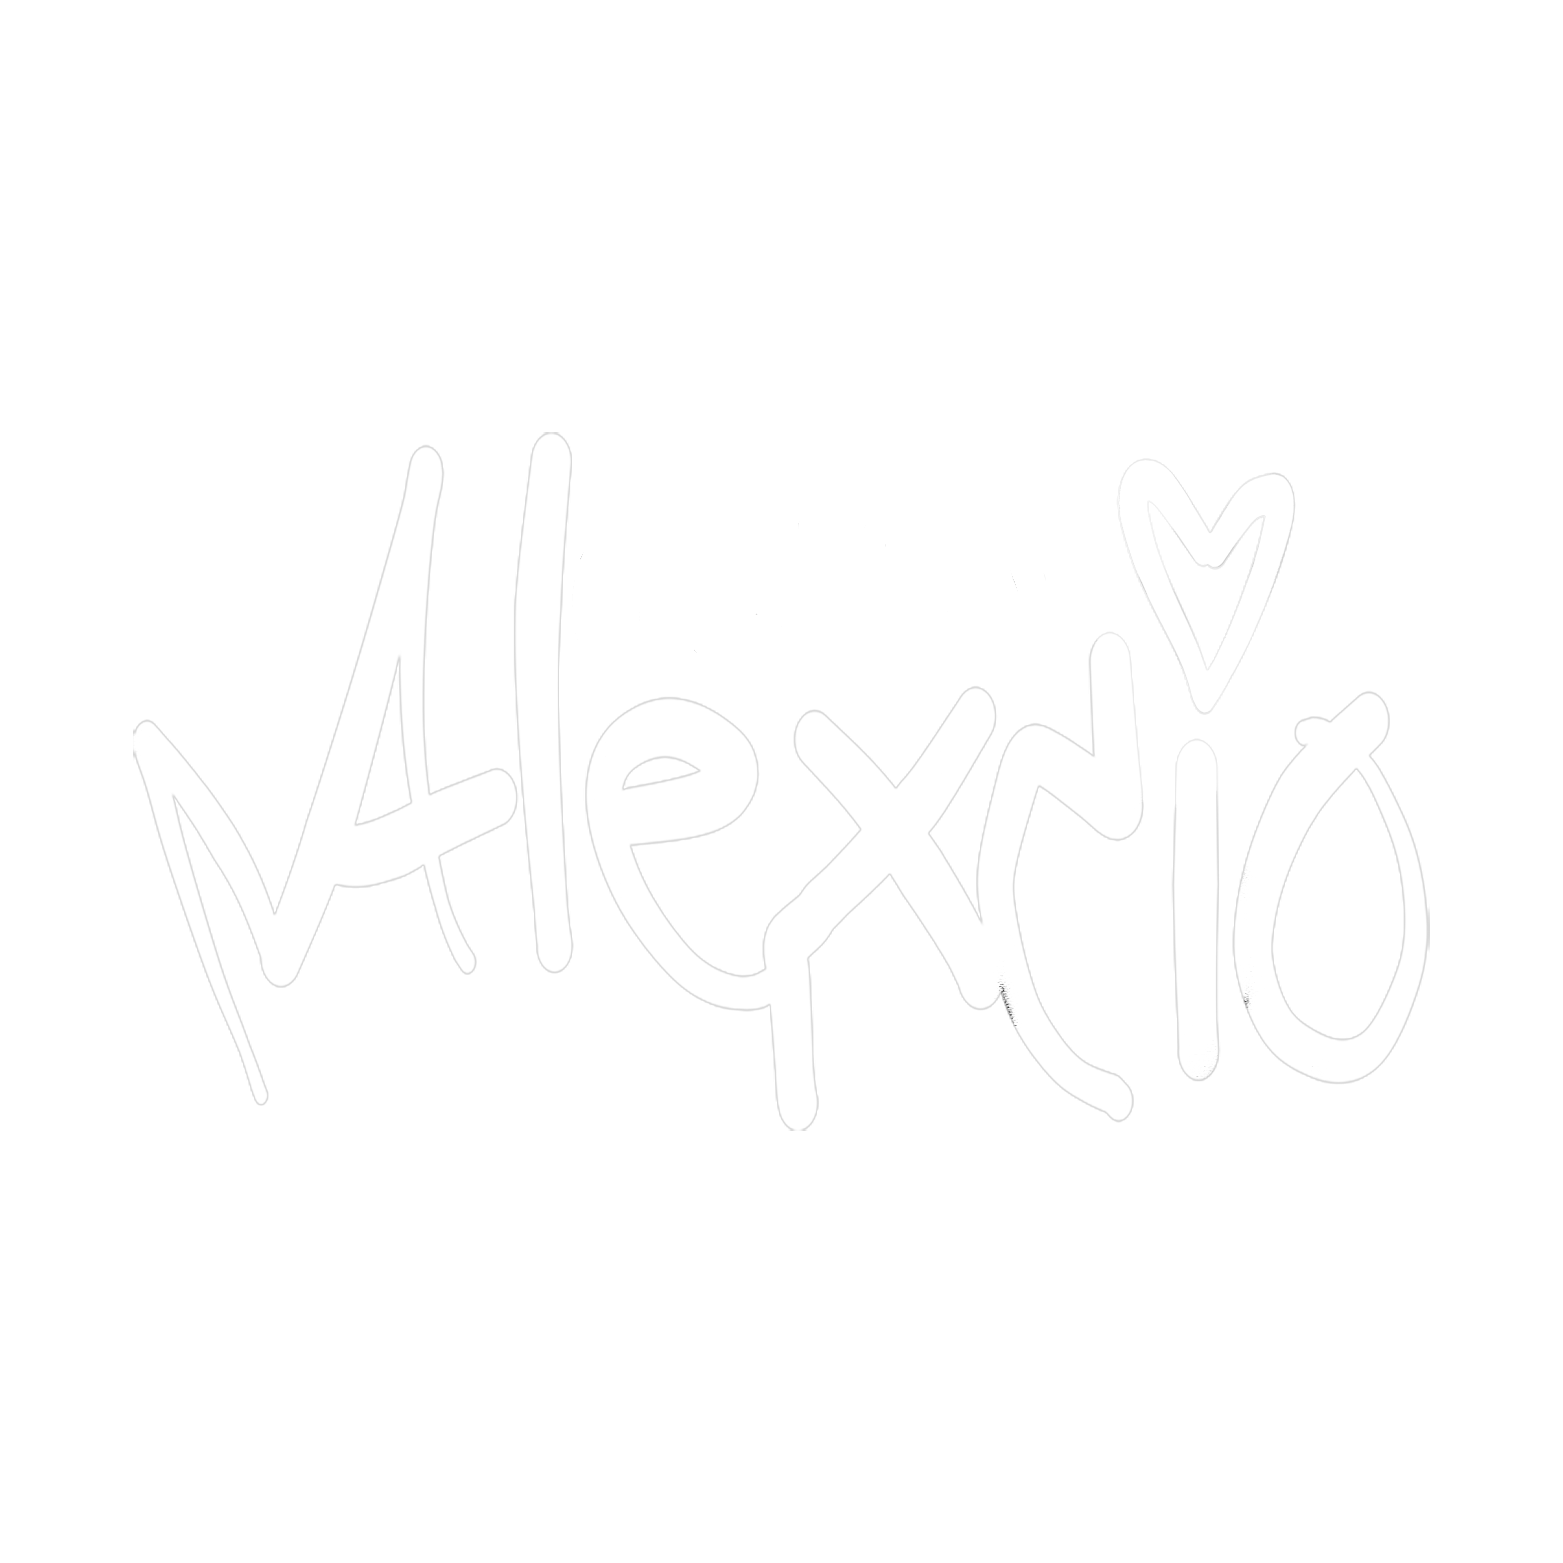 Alexcio